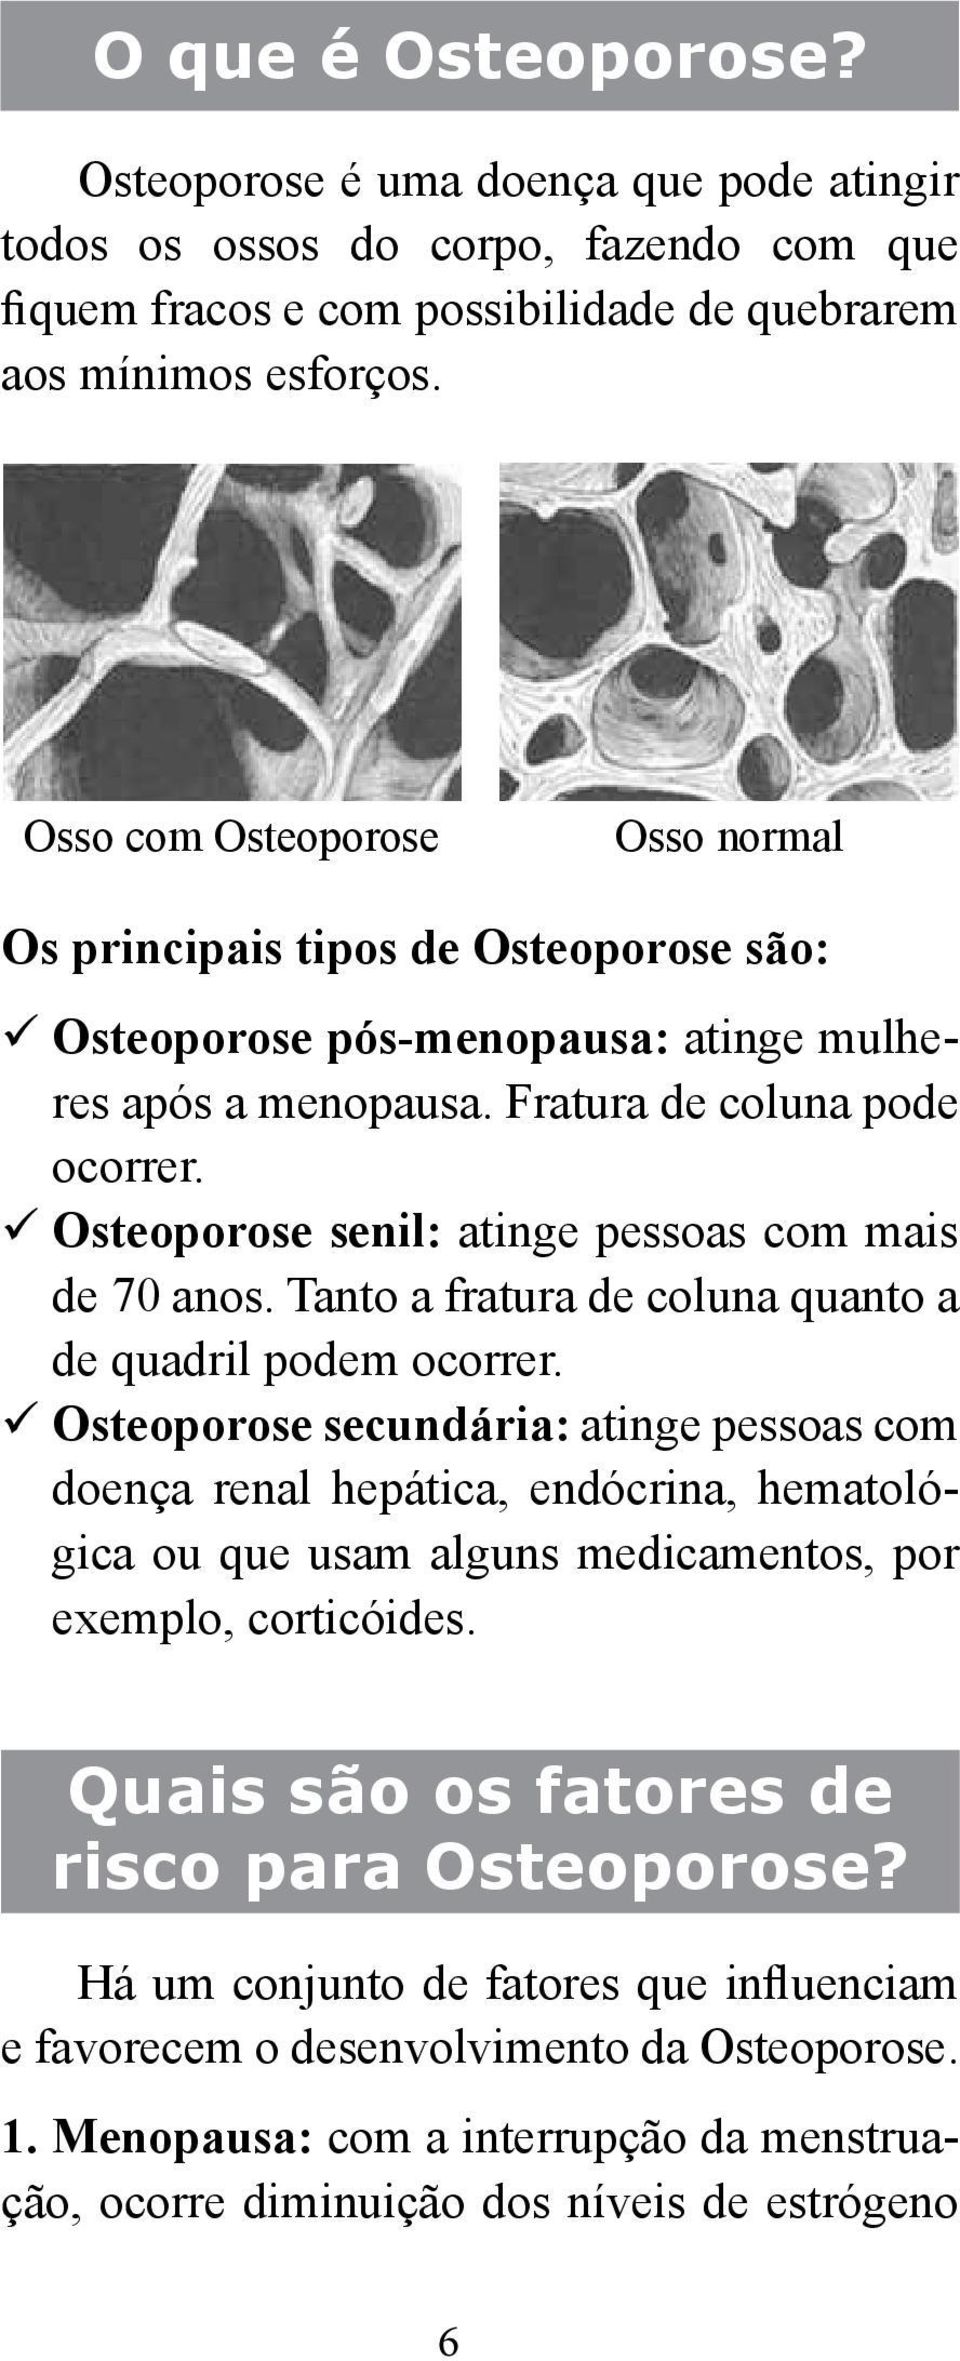 Osteoporose senil: atinge pessoas com mais de 70 anos. Tanto a fratura de coluna quanto a de quadril podem ocorrer.